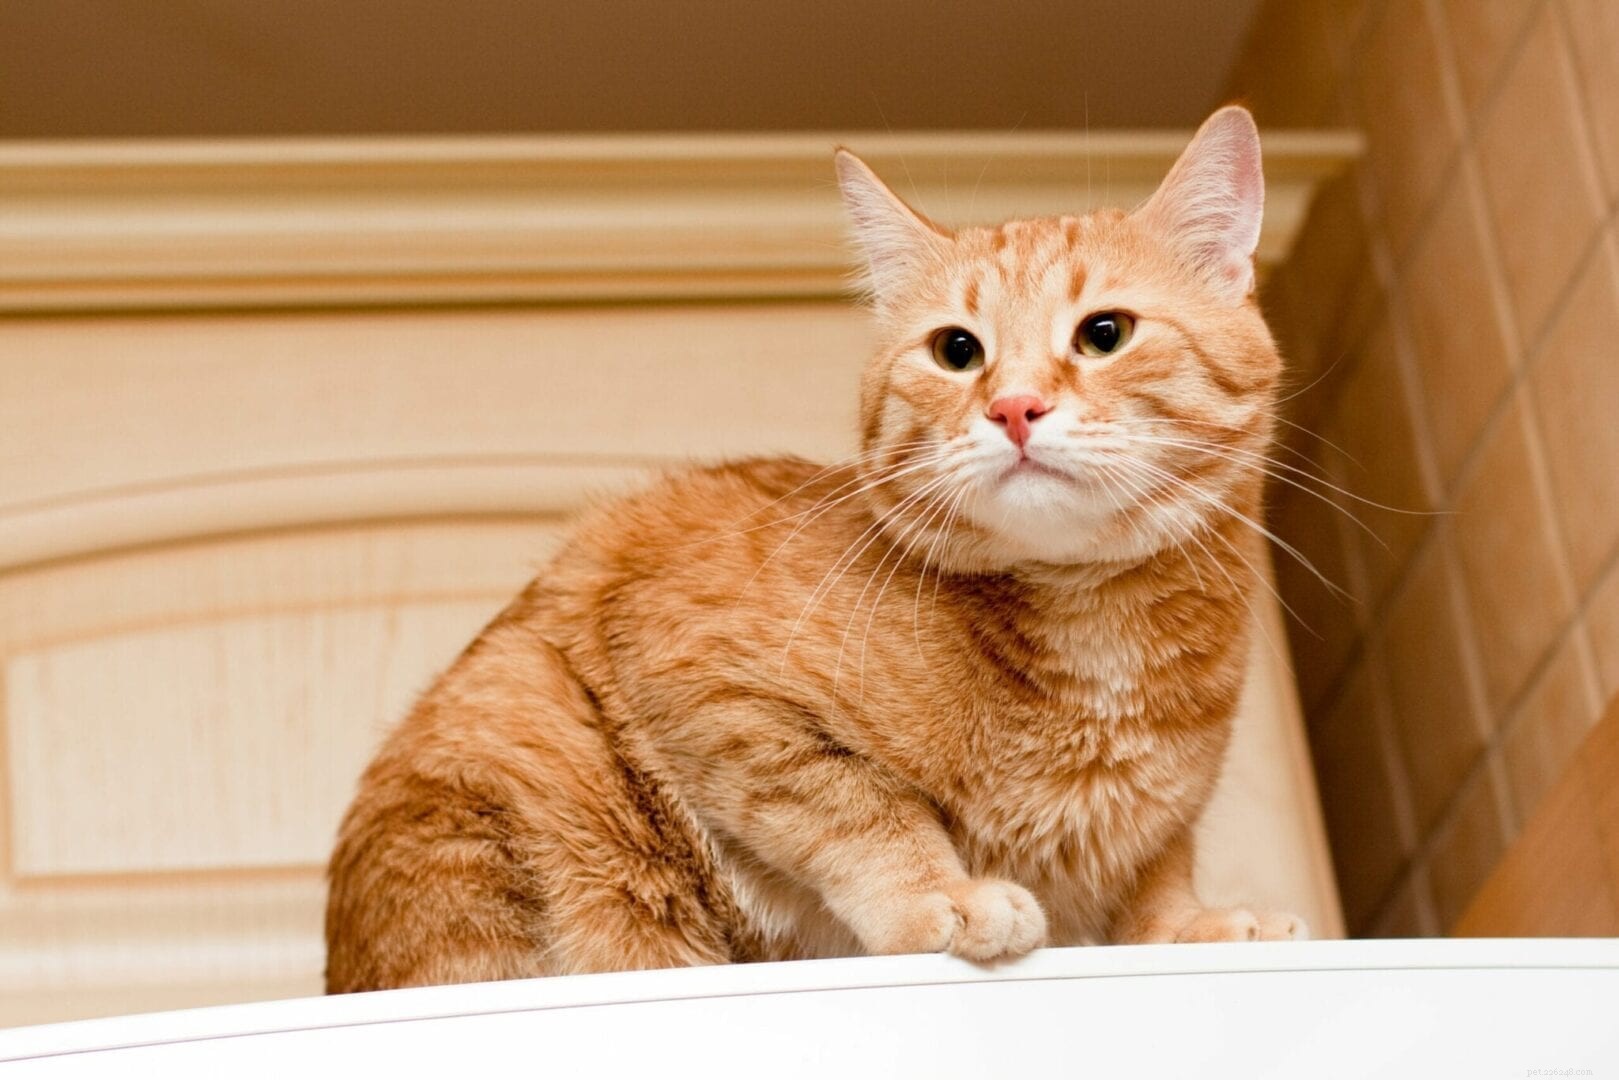 Proč kočky rády sedí na lednici?